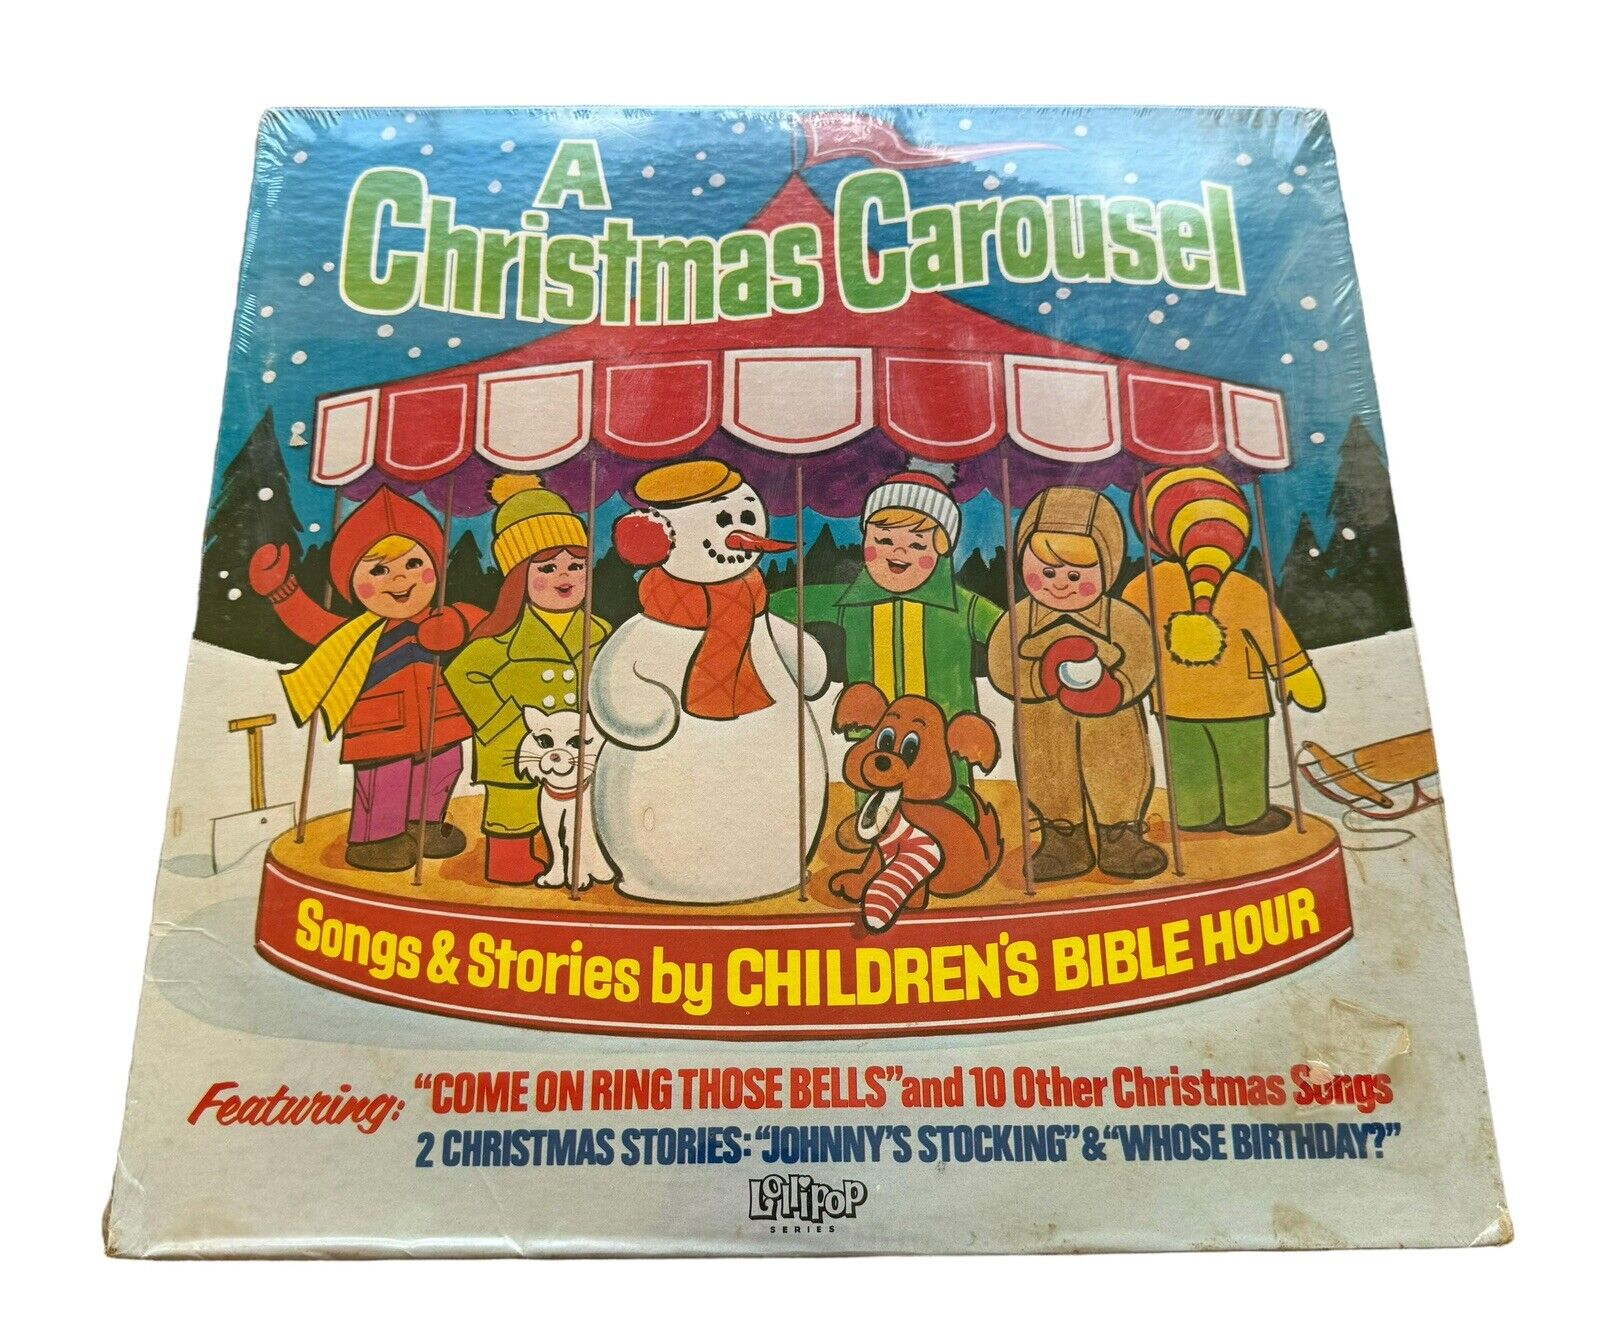 Vintage “A Christmas Carousel” Children’s Bible Hour Vinyl LP 1998 Lollipop New